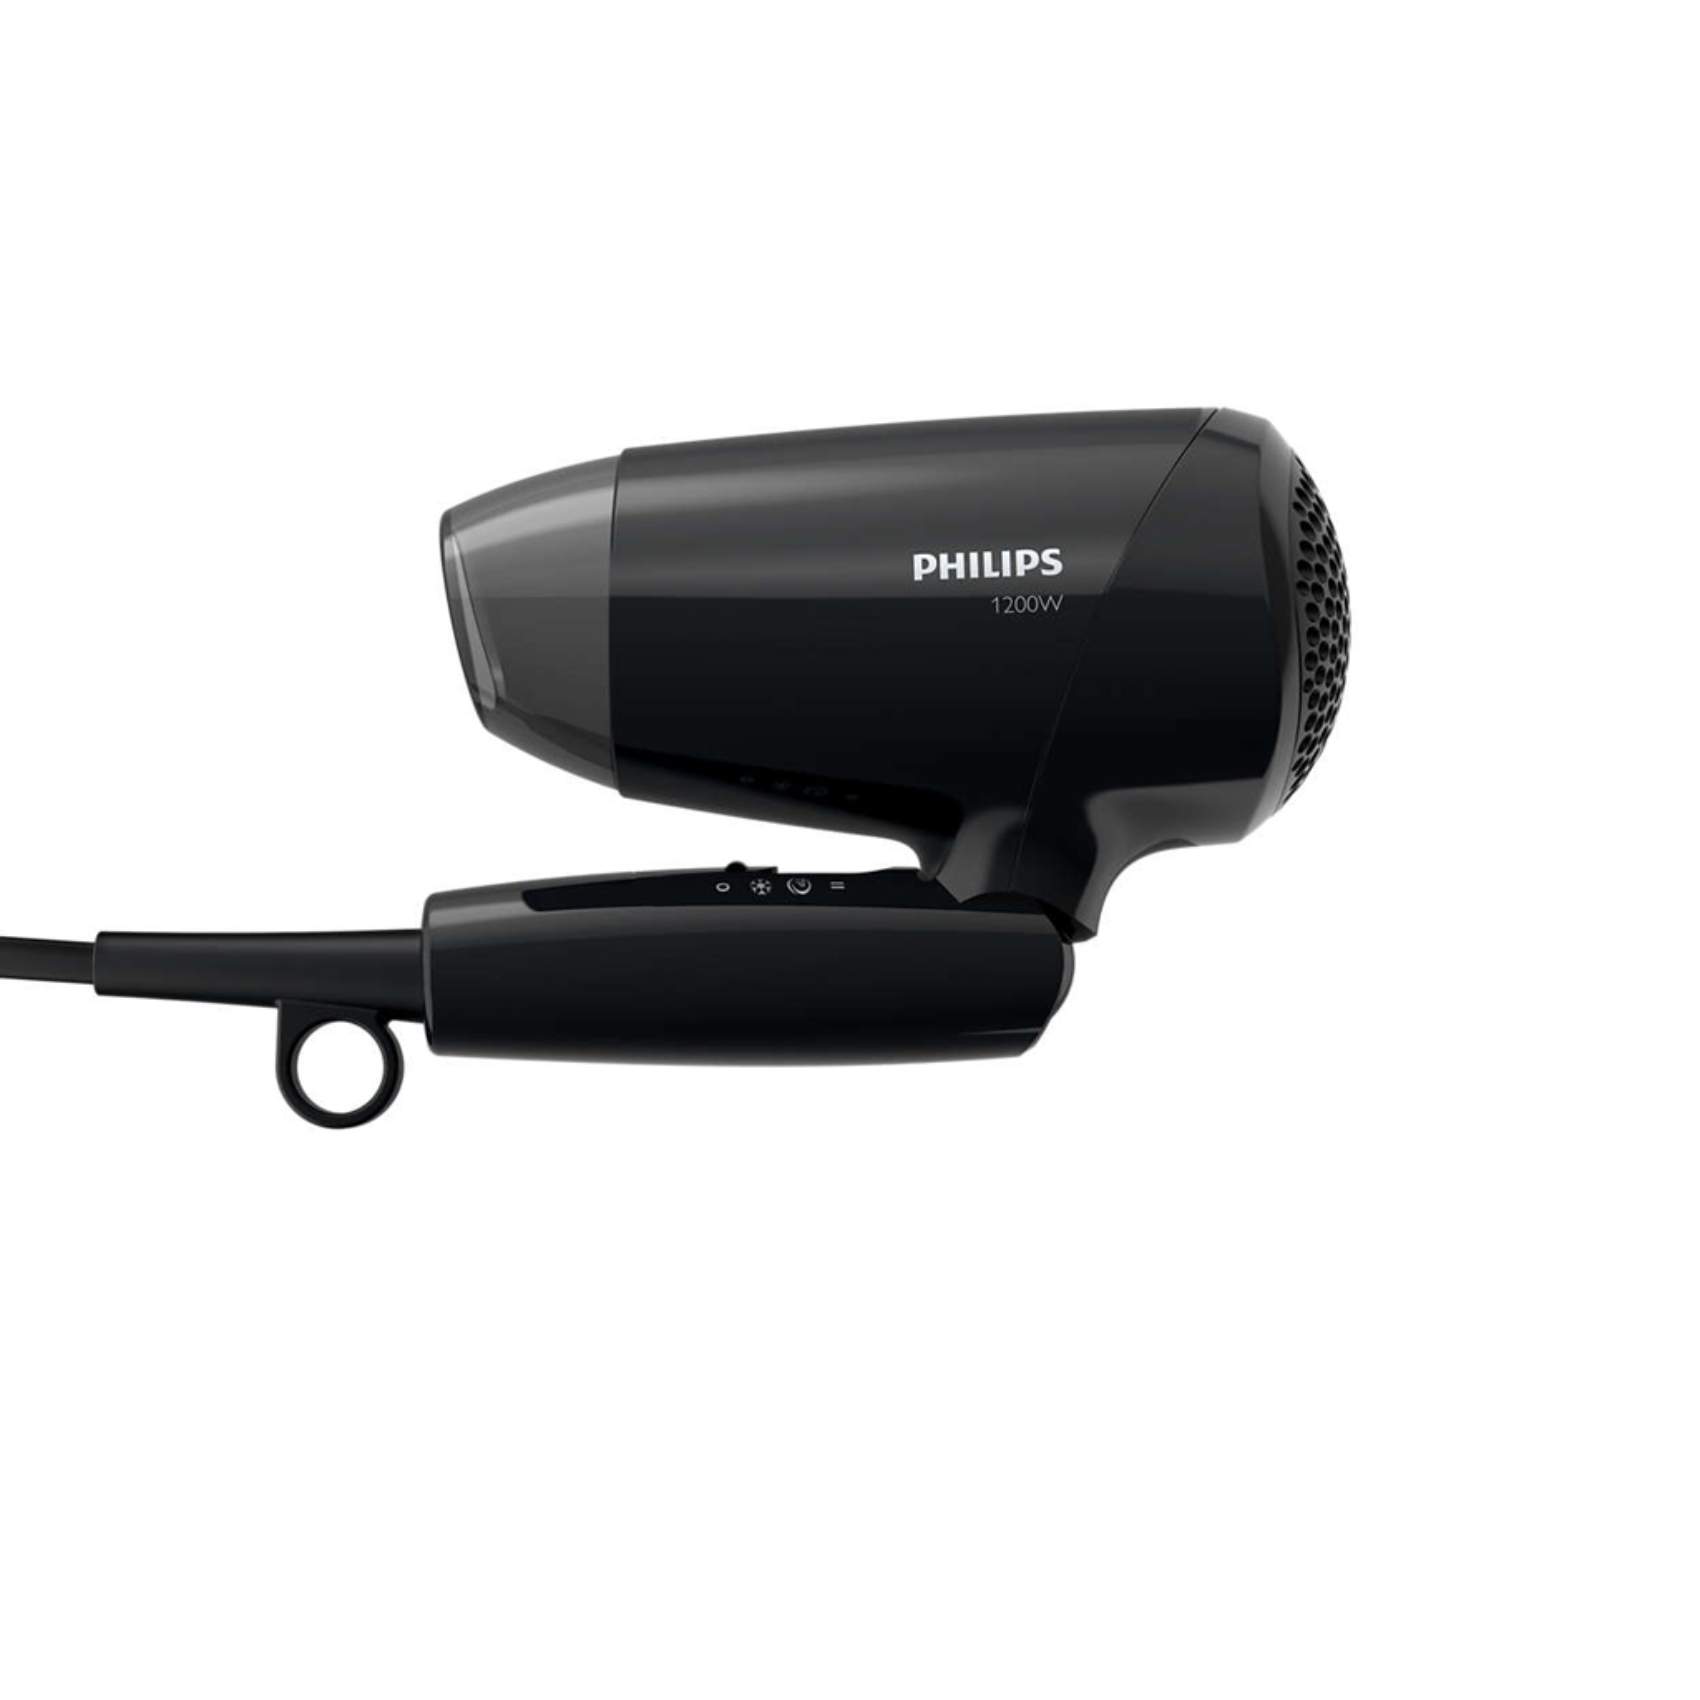 Philips Hair Dryer 1200W BHC010 Black